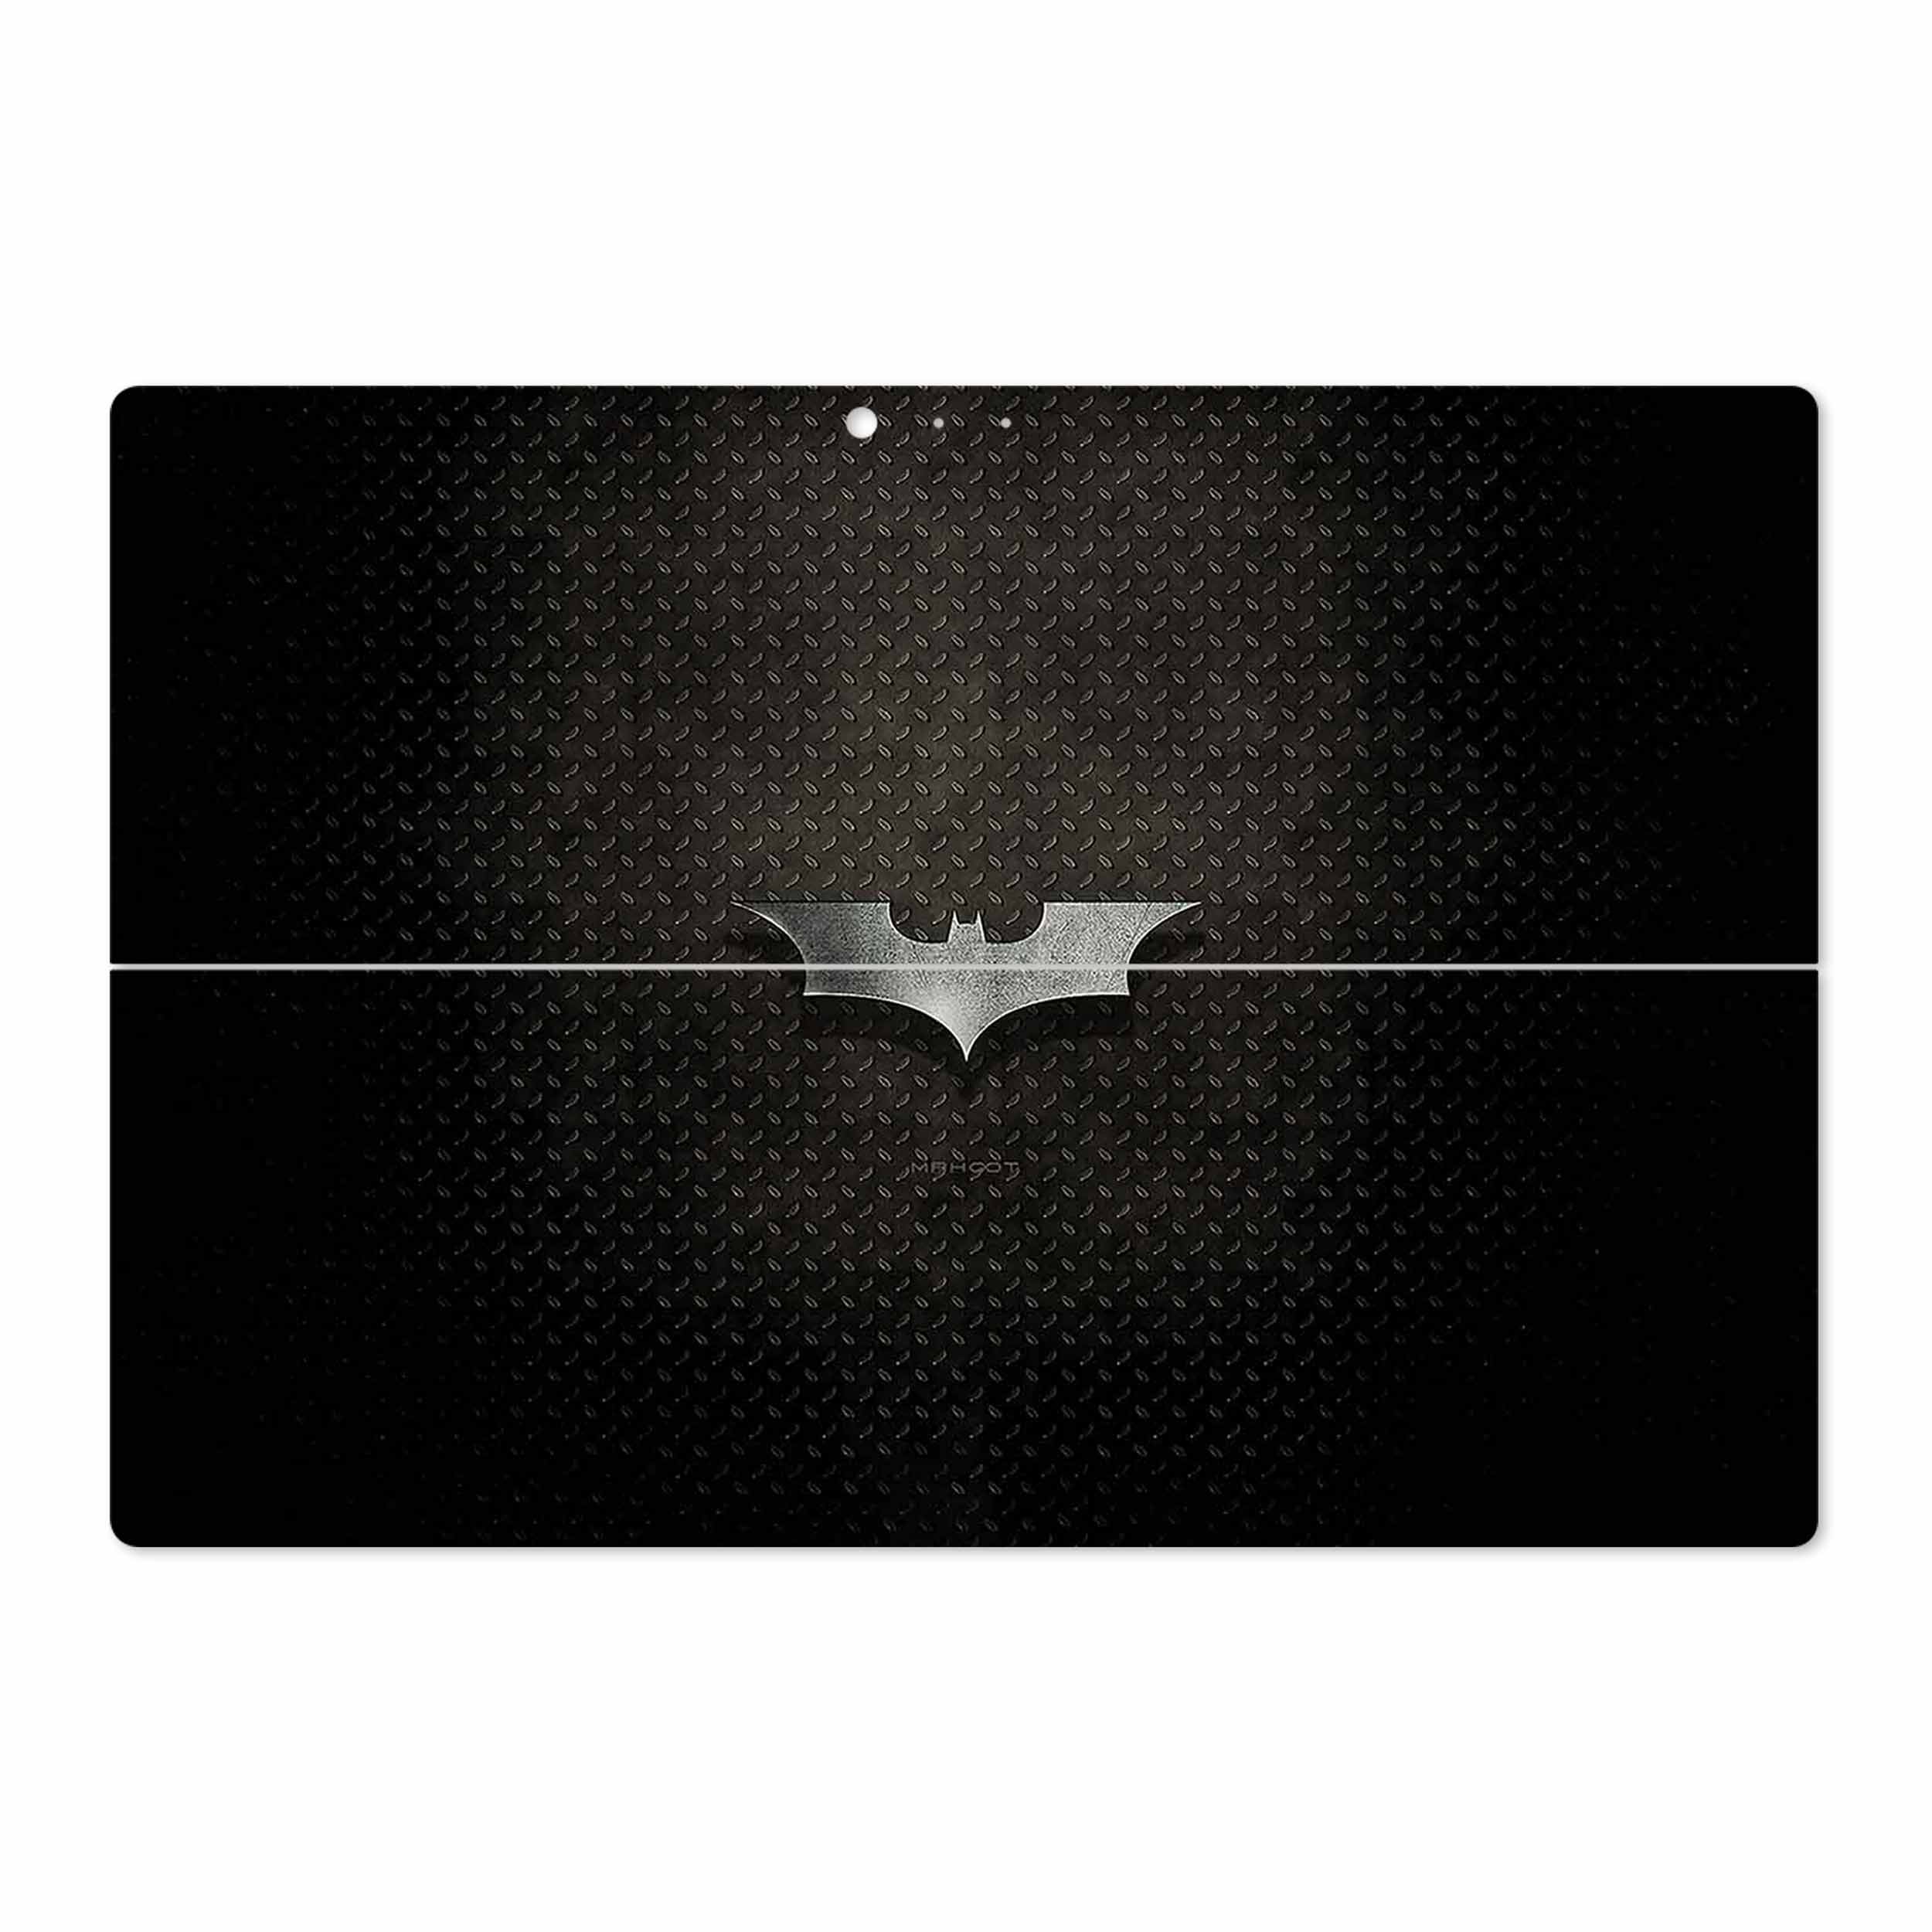 برچسب پوششی ماهوت مدل Batman مناسب برای تبلت مایکروسافت Surface Pro 3 2014